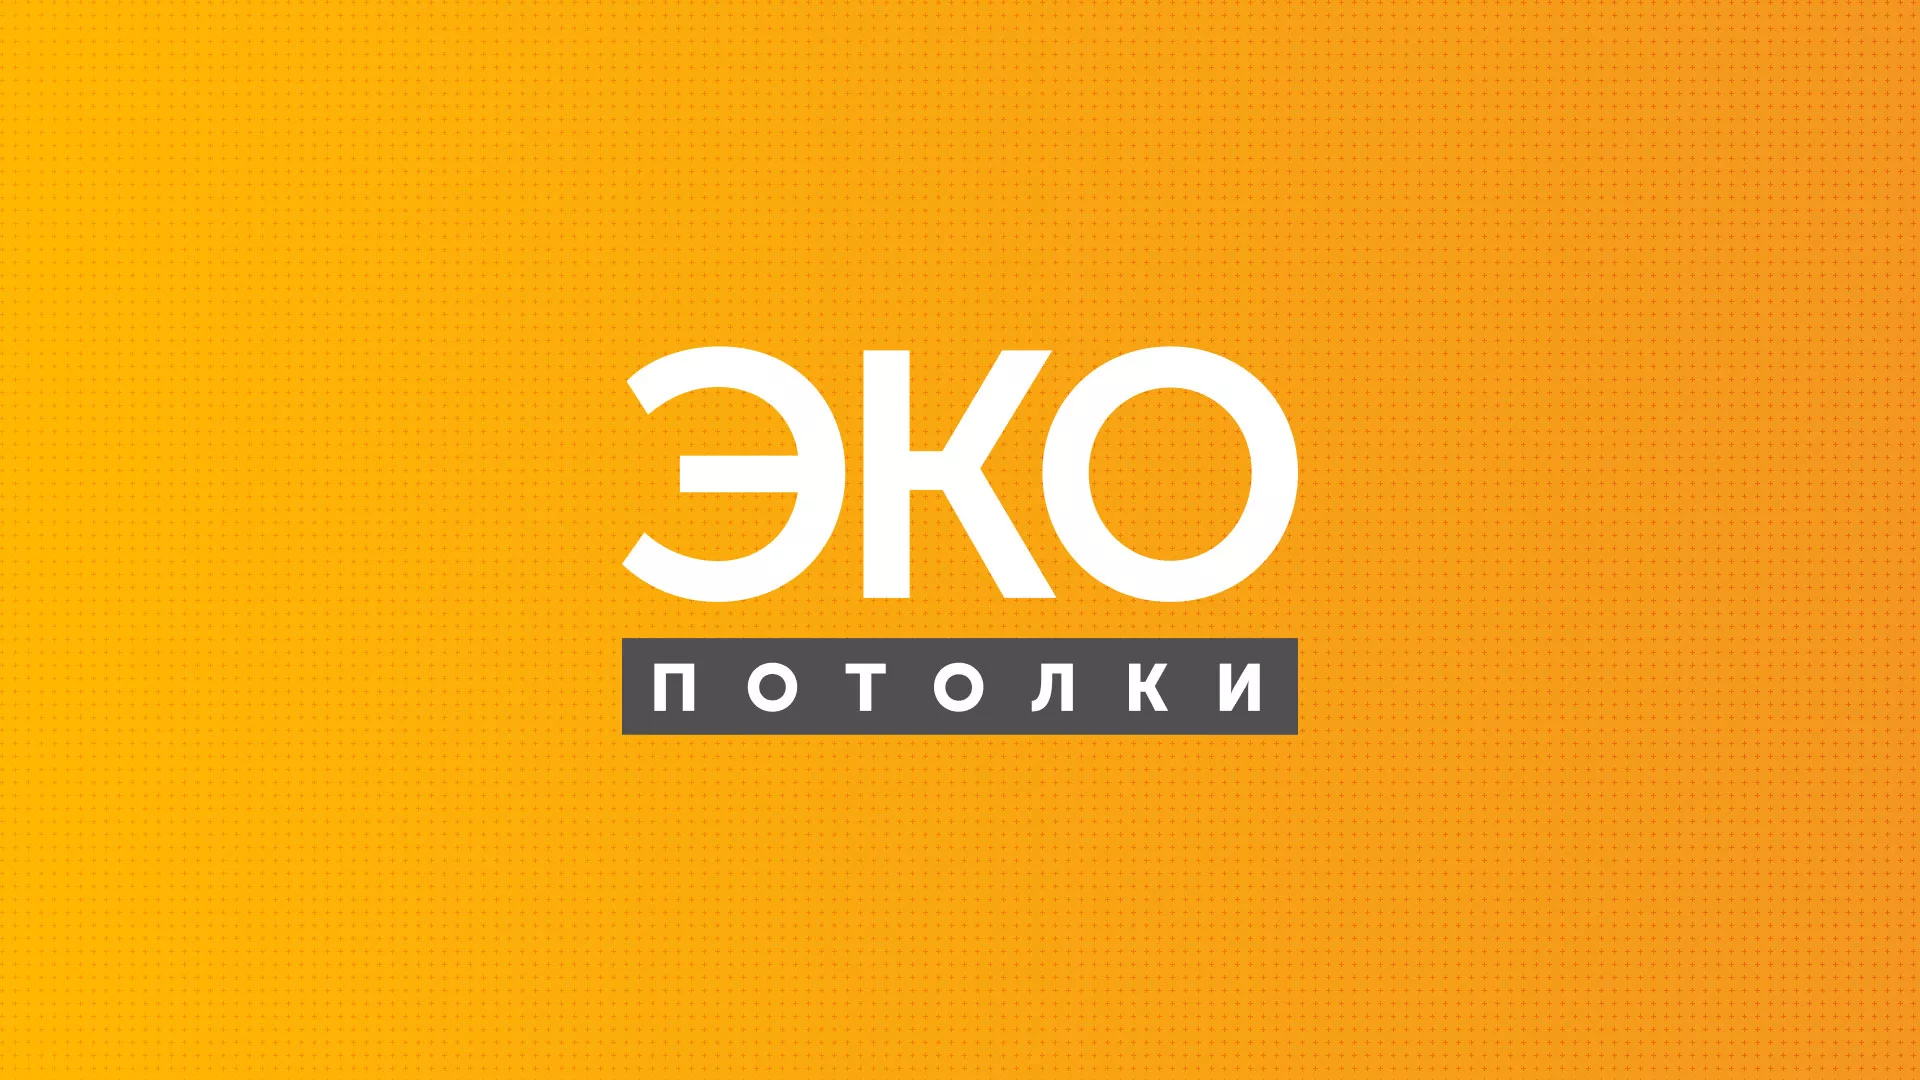 Разработка сайта по натяжным потолкам «Эко Потолки» в Лысково